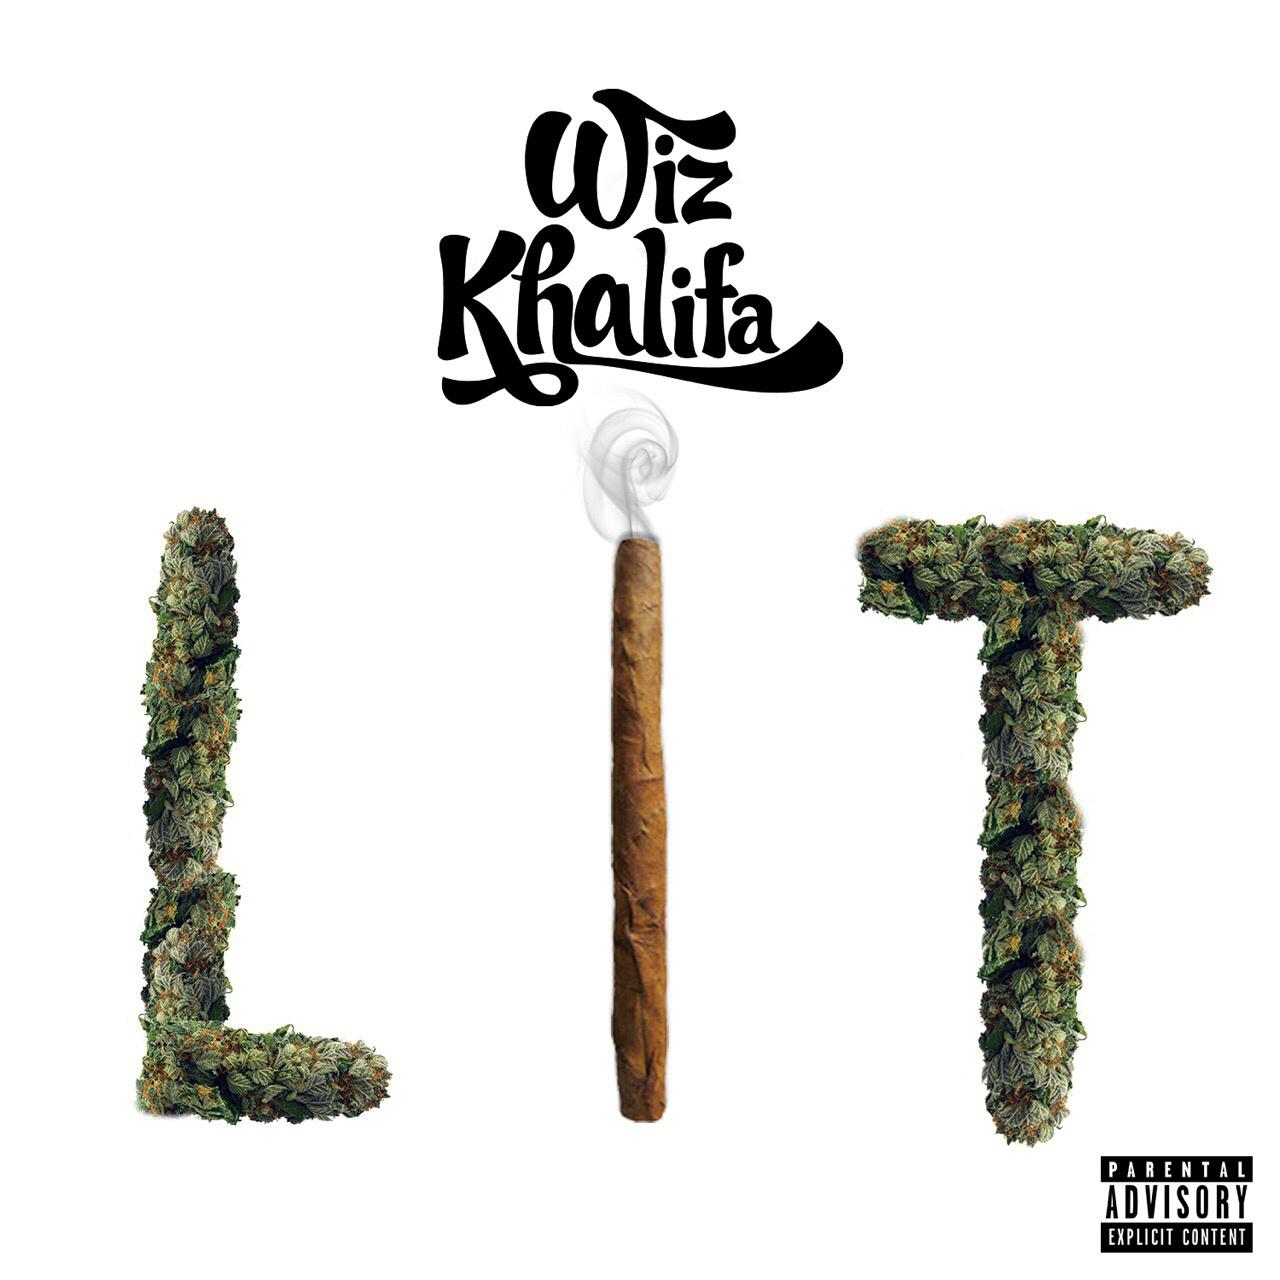 Lit歌词 歌手Wiz Khalifa-专辑Lit-单曲《Lit》LRC歌词下载